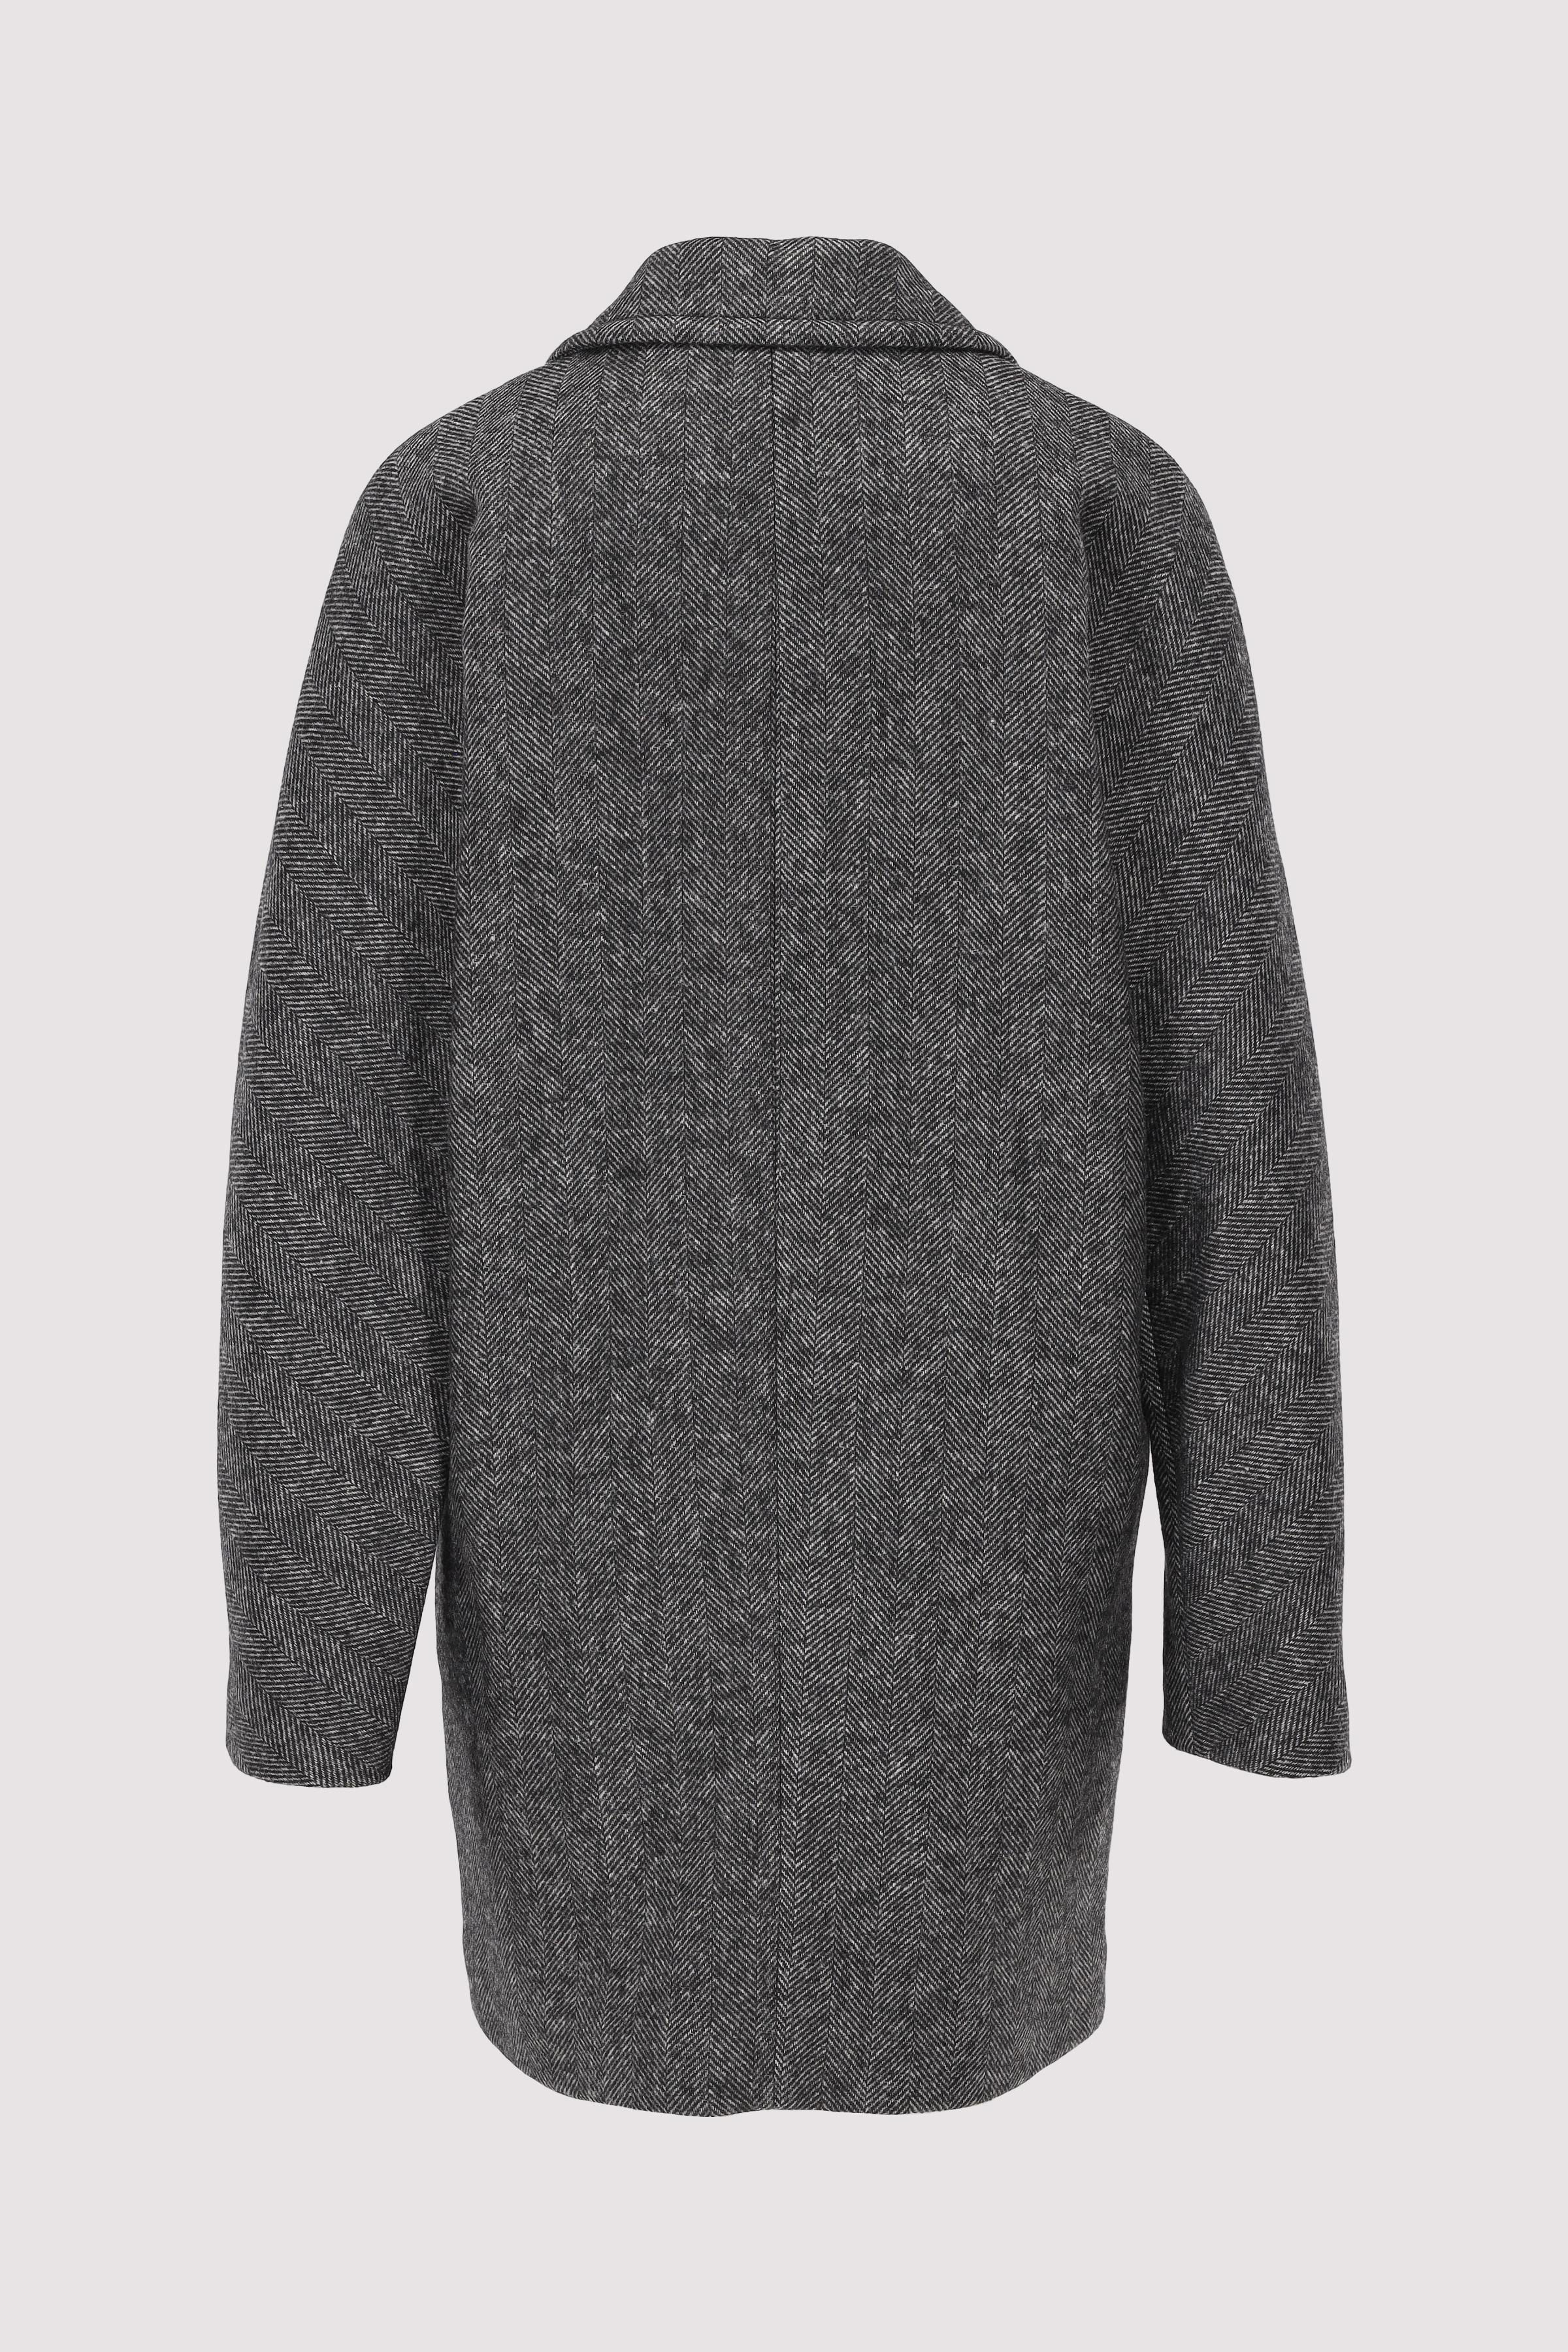 Herringbone wool caban jacket,